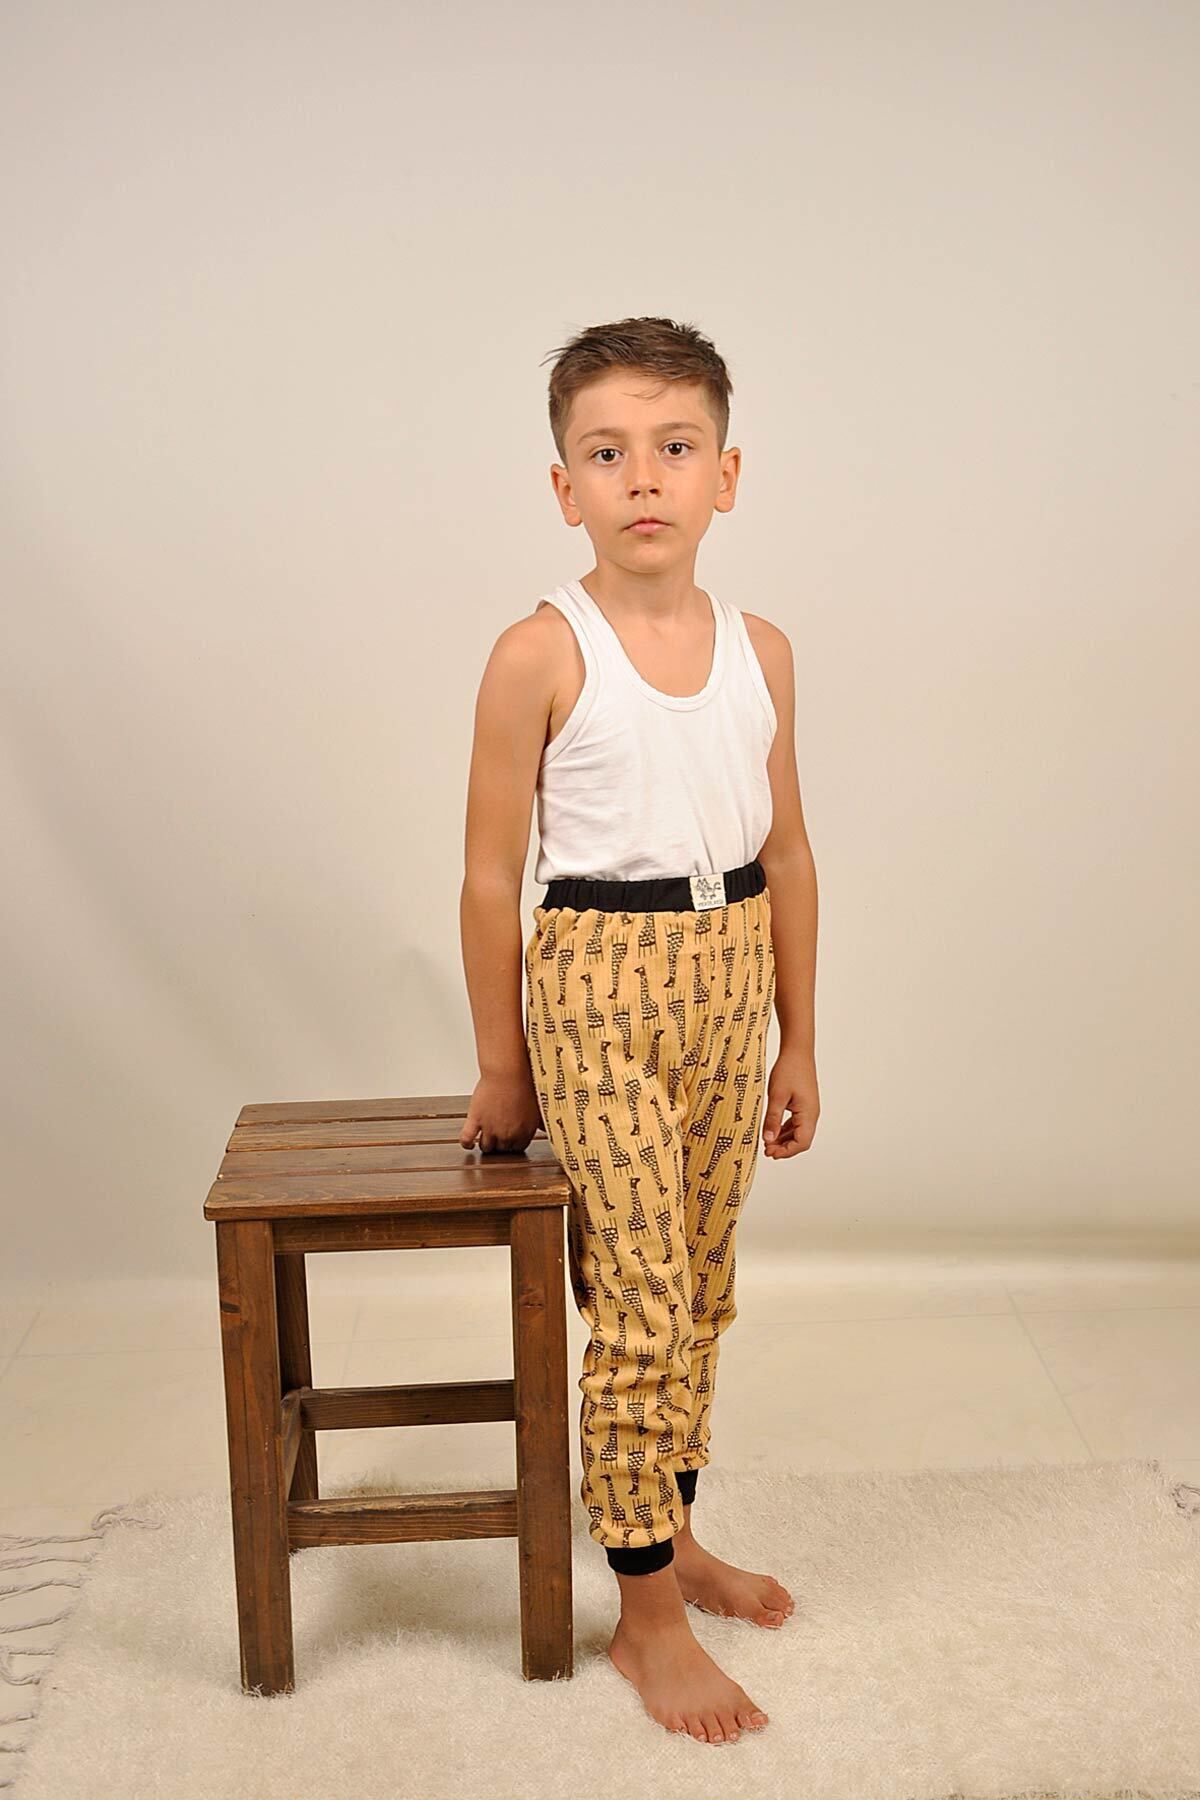 Peki Çocuk 5 Al 4 Öde Raporlu Yumusak Pamuklu Genis Kalip Zürafa Baskili Pijama Pantolonu Tek Alt 14898